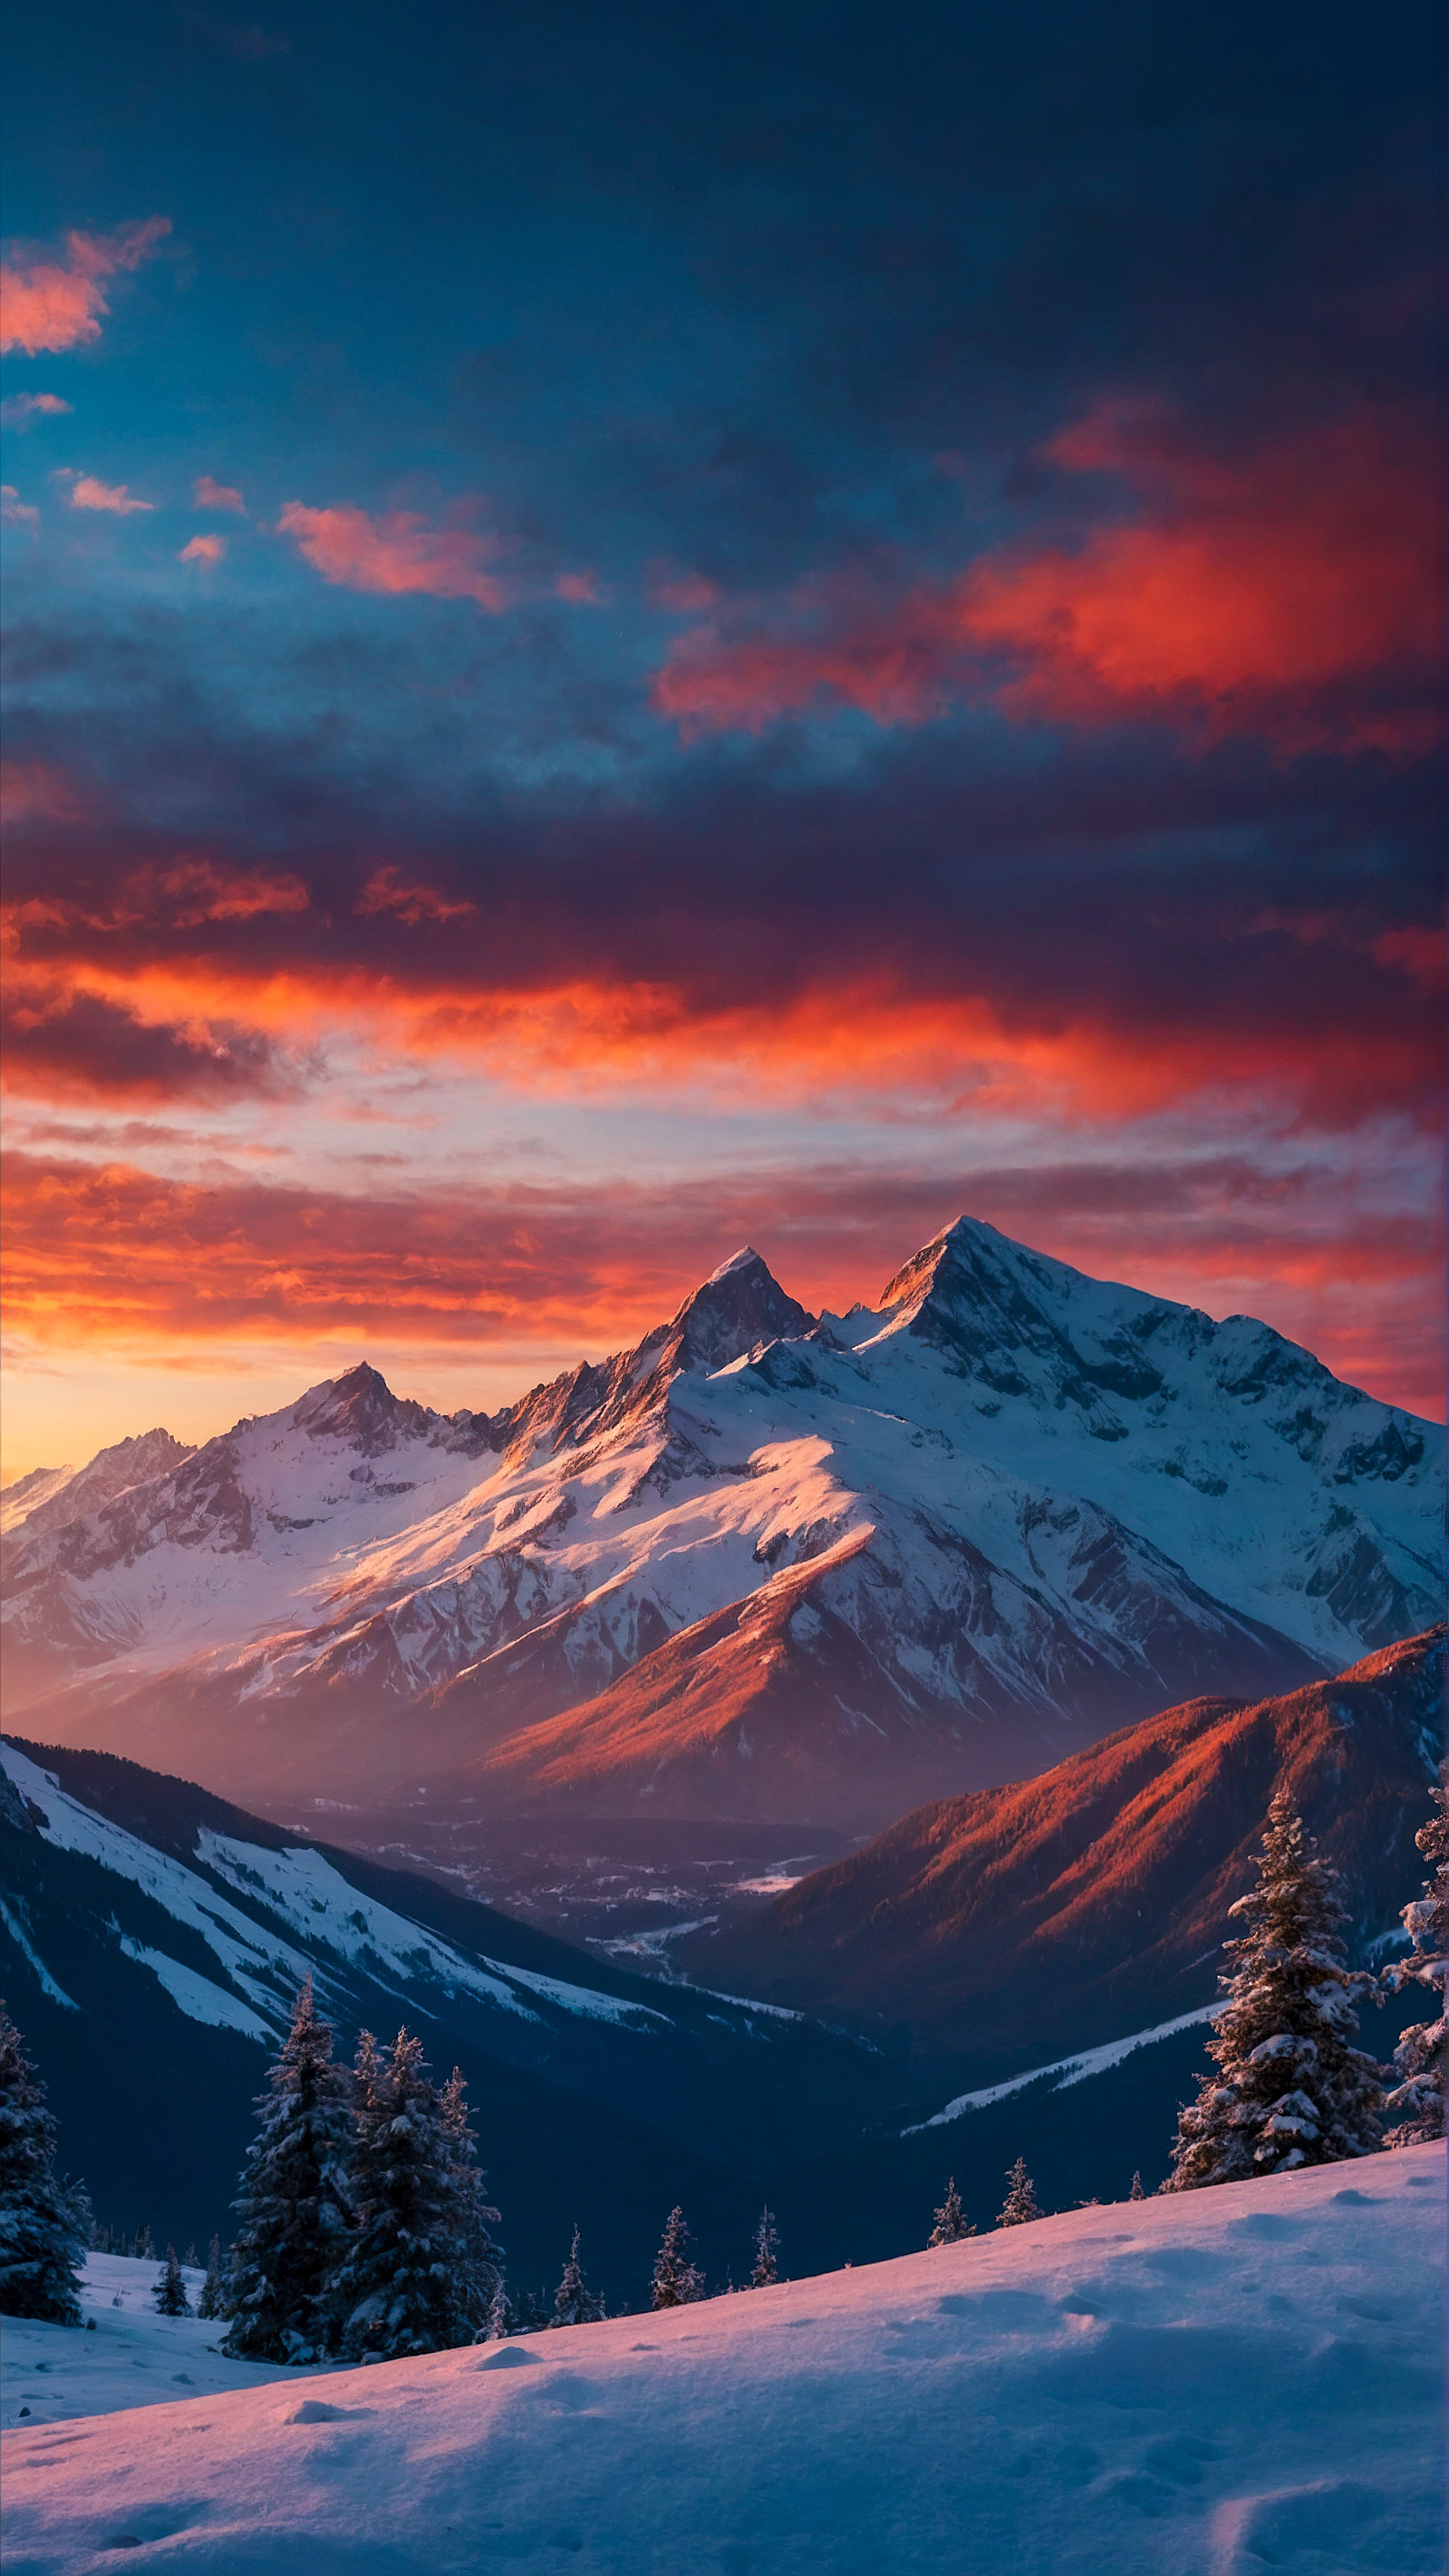 Capturez l'essence de la beauté naturelle avec notre fond d'écran nature 4K pour iPhone, offrant une vue à couper le souffle de montagnes couvertes de neige sous un ciel vibrant et coloré au crépuscule.